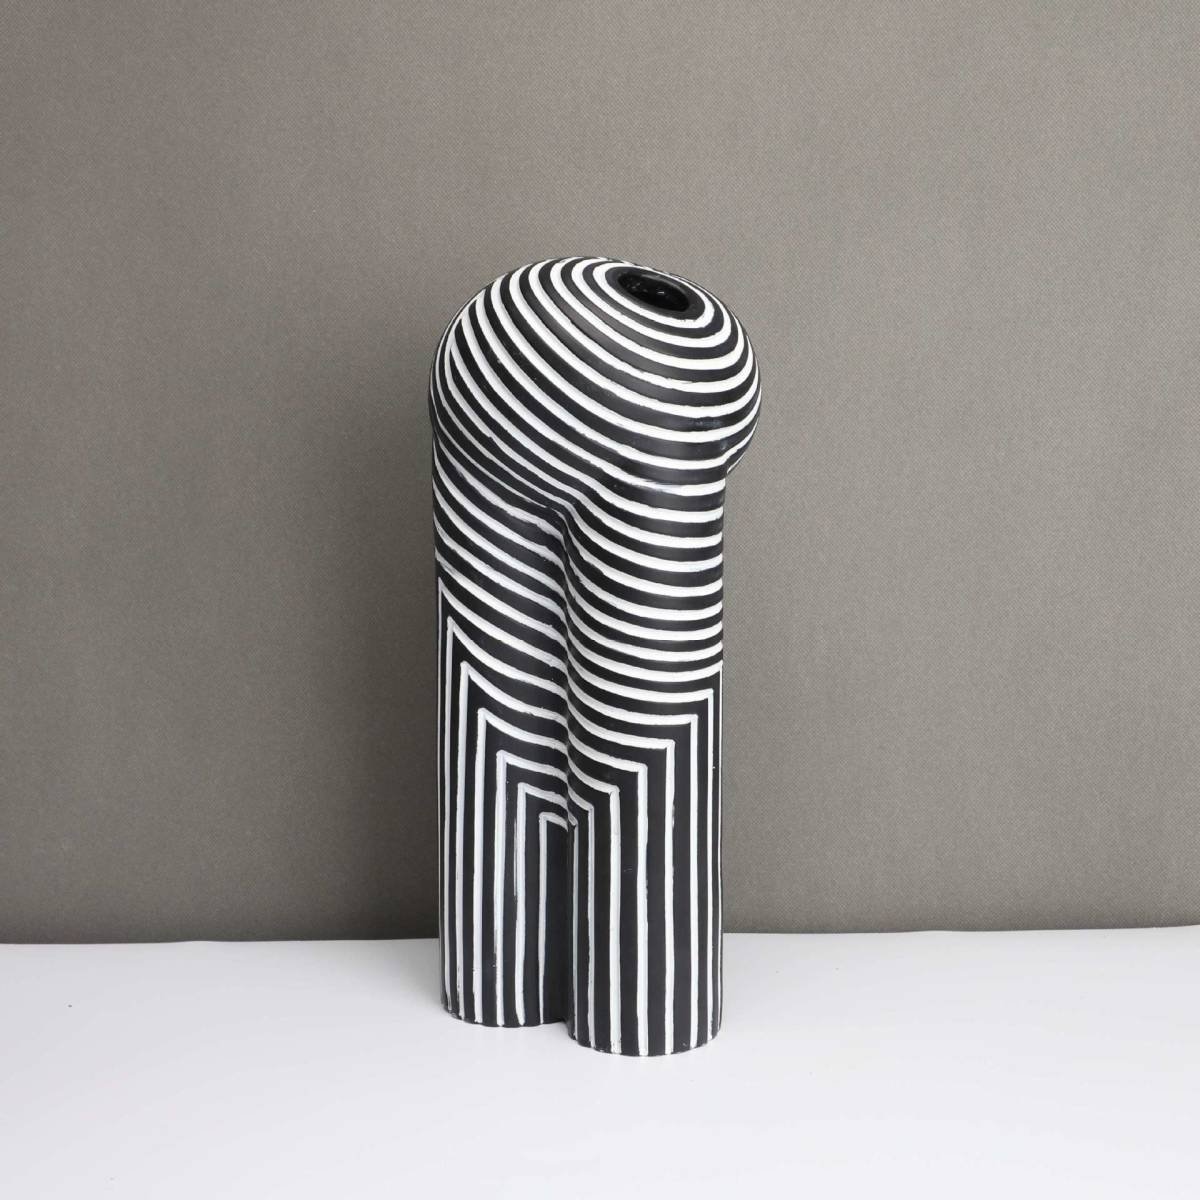 ヨーロピアンスタイルの花瓶 クリエイティブな白黒の縞模様 花器 モダン フラワーベース ブラック ホワイト ストライプ 2サイズ_画像5